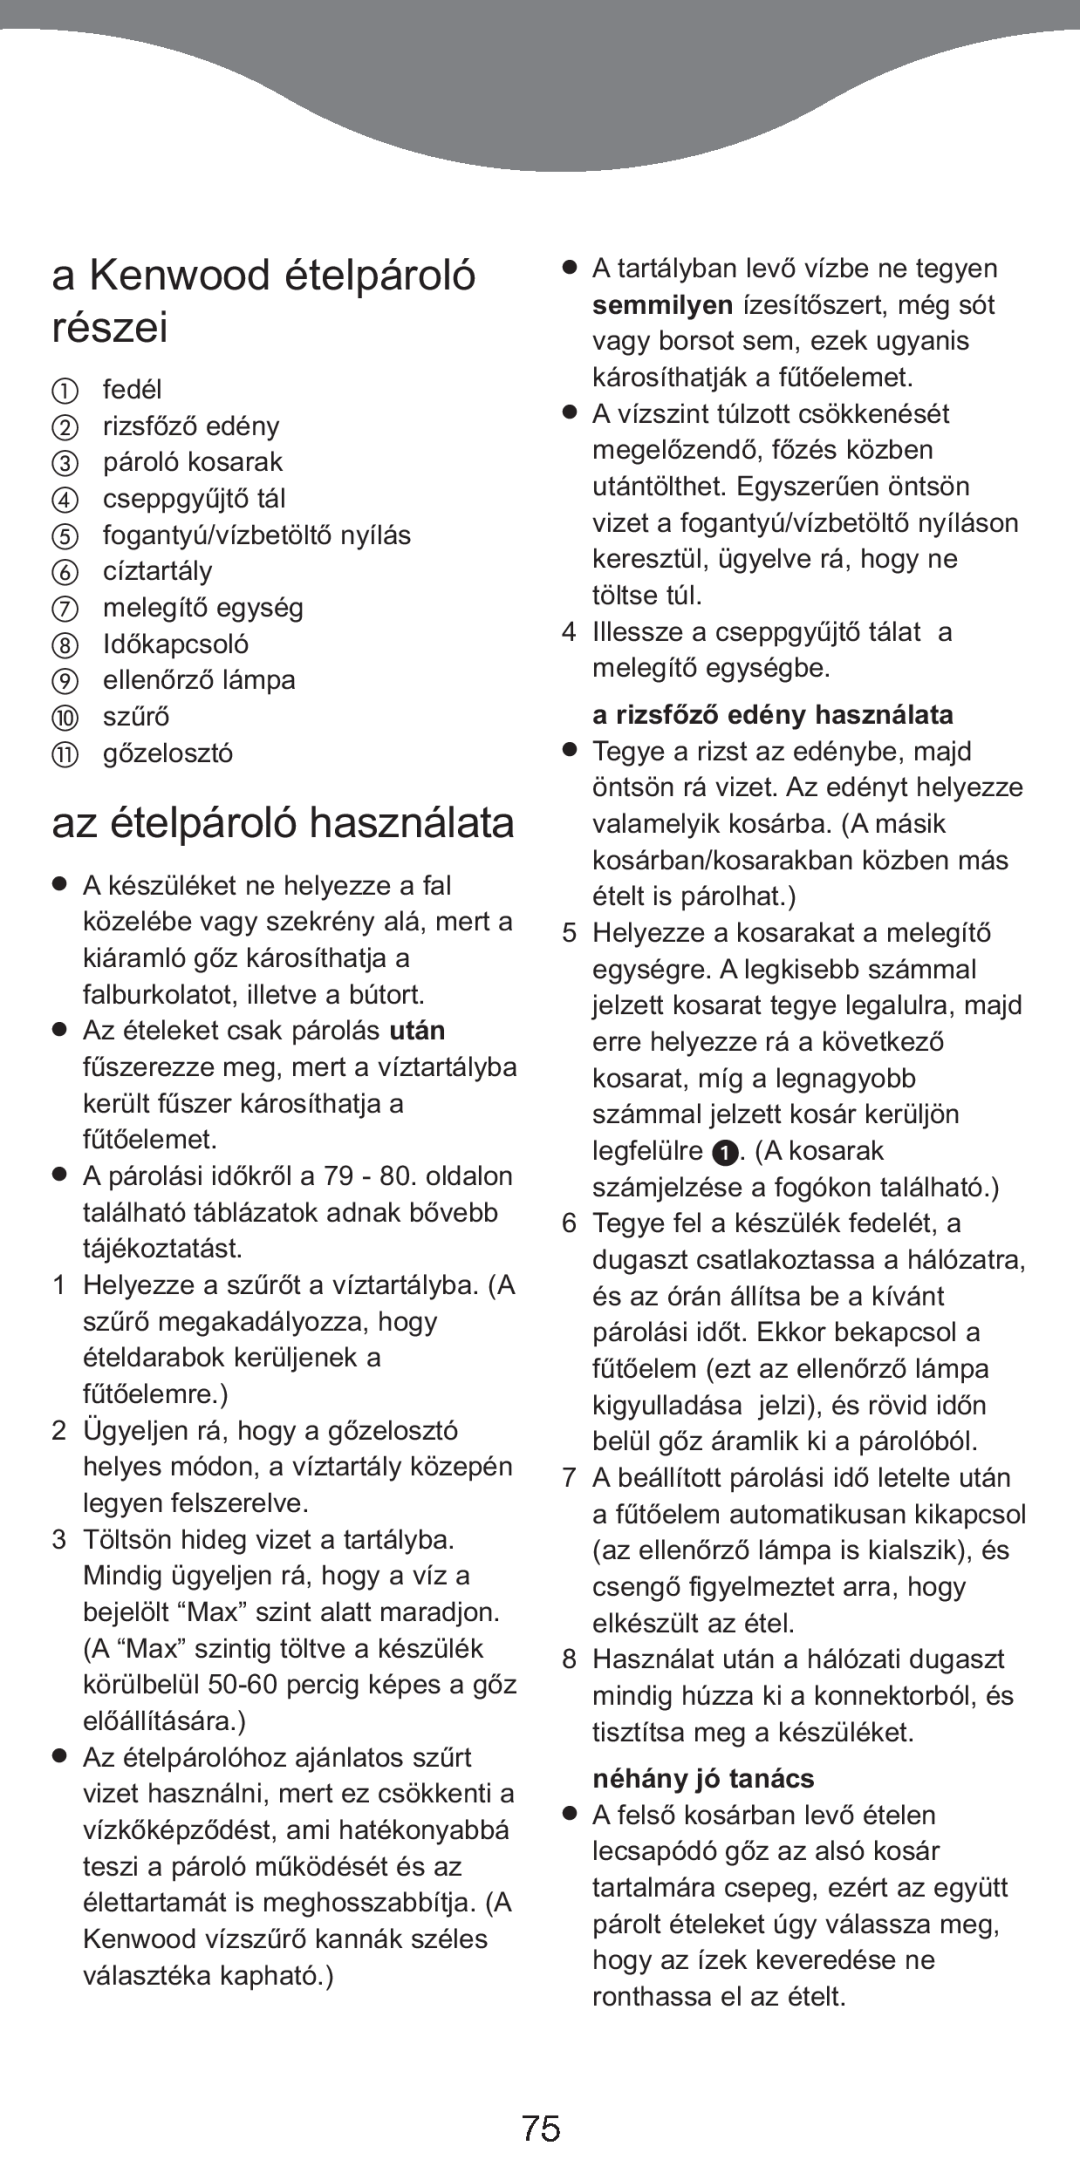 Kenwood FS370 manual a Kenwood ételpároló részei, az ételpároló használata, a rizsfòzò edény használata, néhány jó tanács 